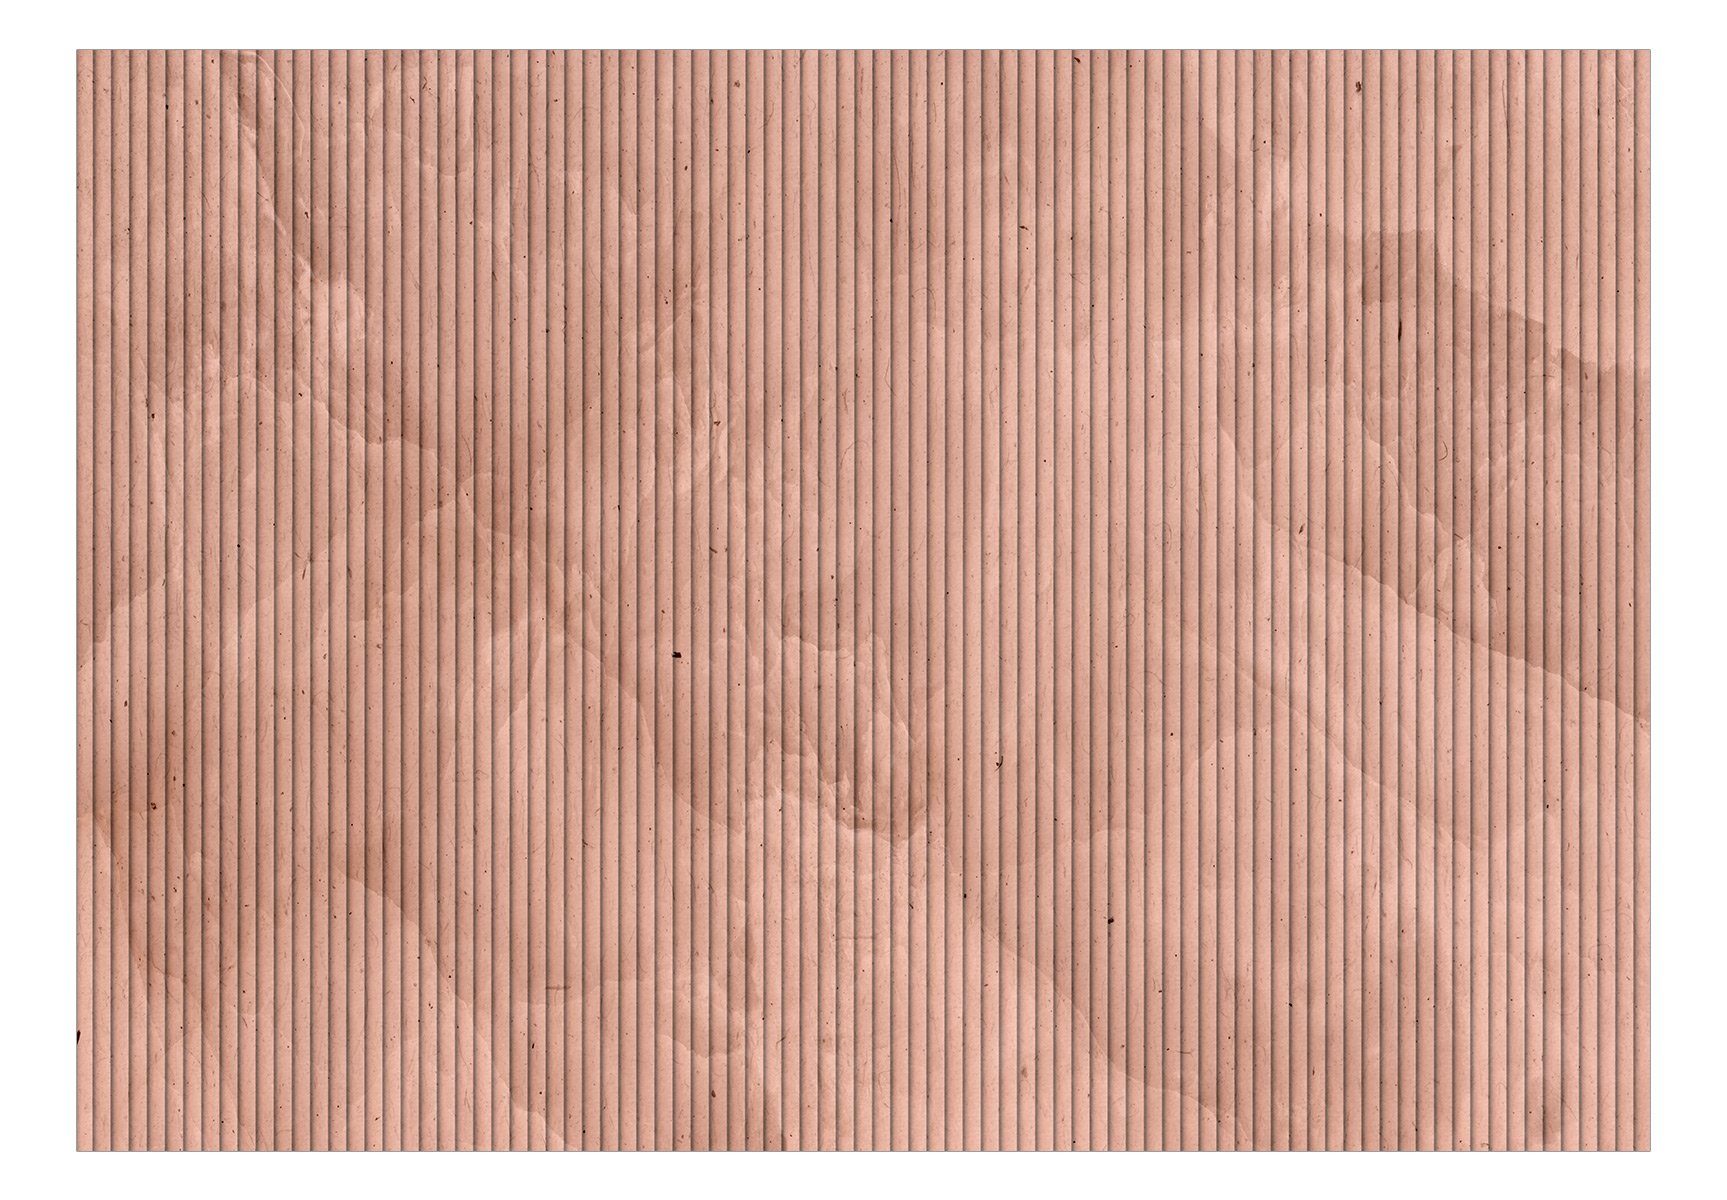 KUNSTLOFT Vliestapete Pink Reed 1x0.7 m, halb-matt, Design lichtbeständige Tapete